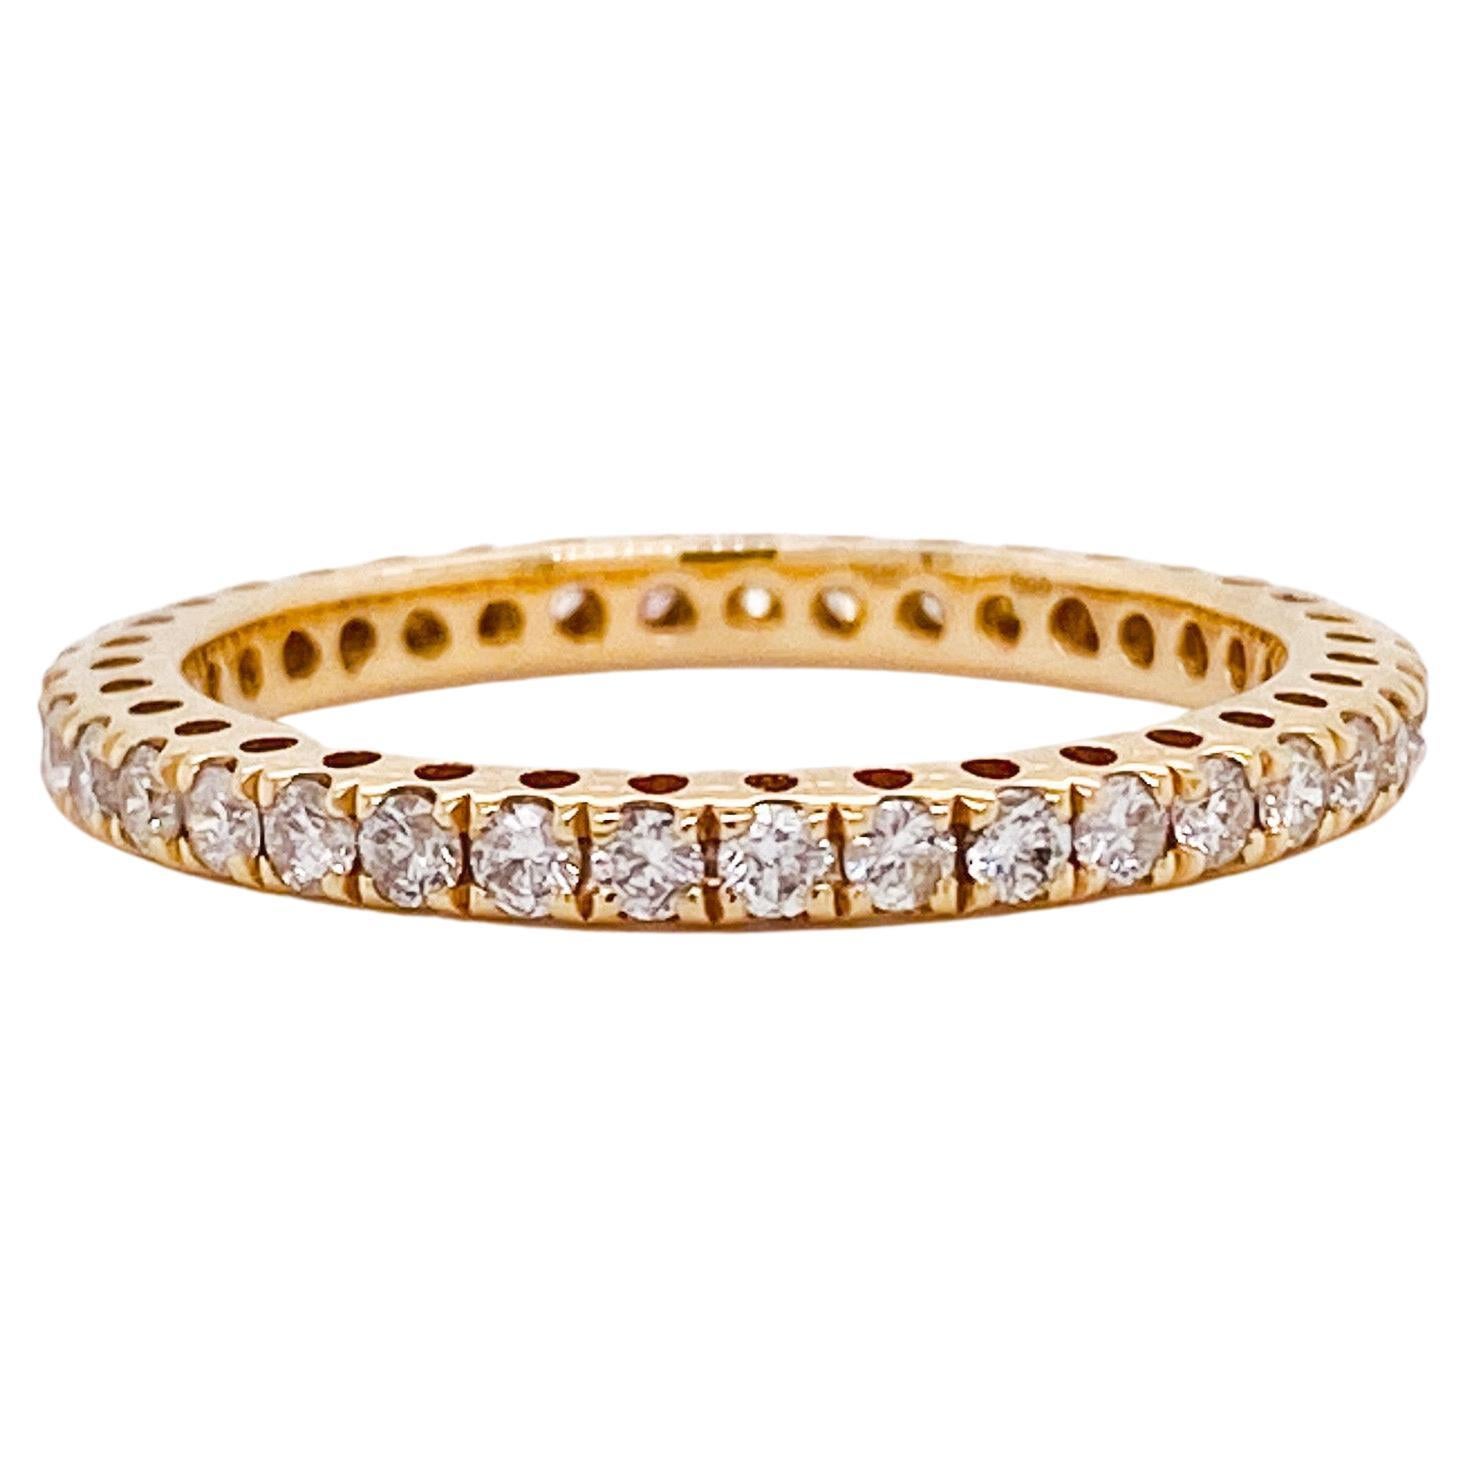 Diamant-Eternity-Ring mit 0,70 Karat, 14 Karat Gelbgold, perfekter Kreis